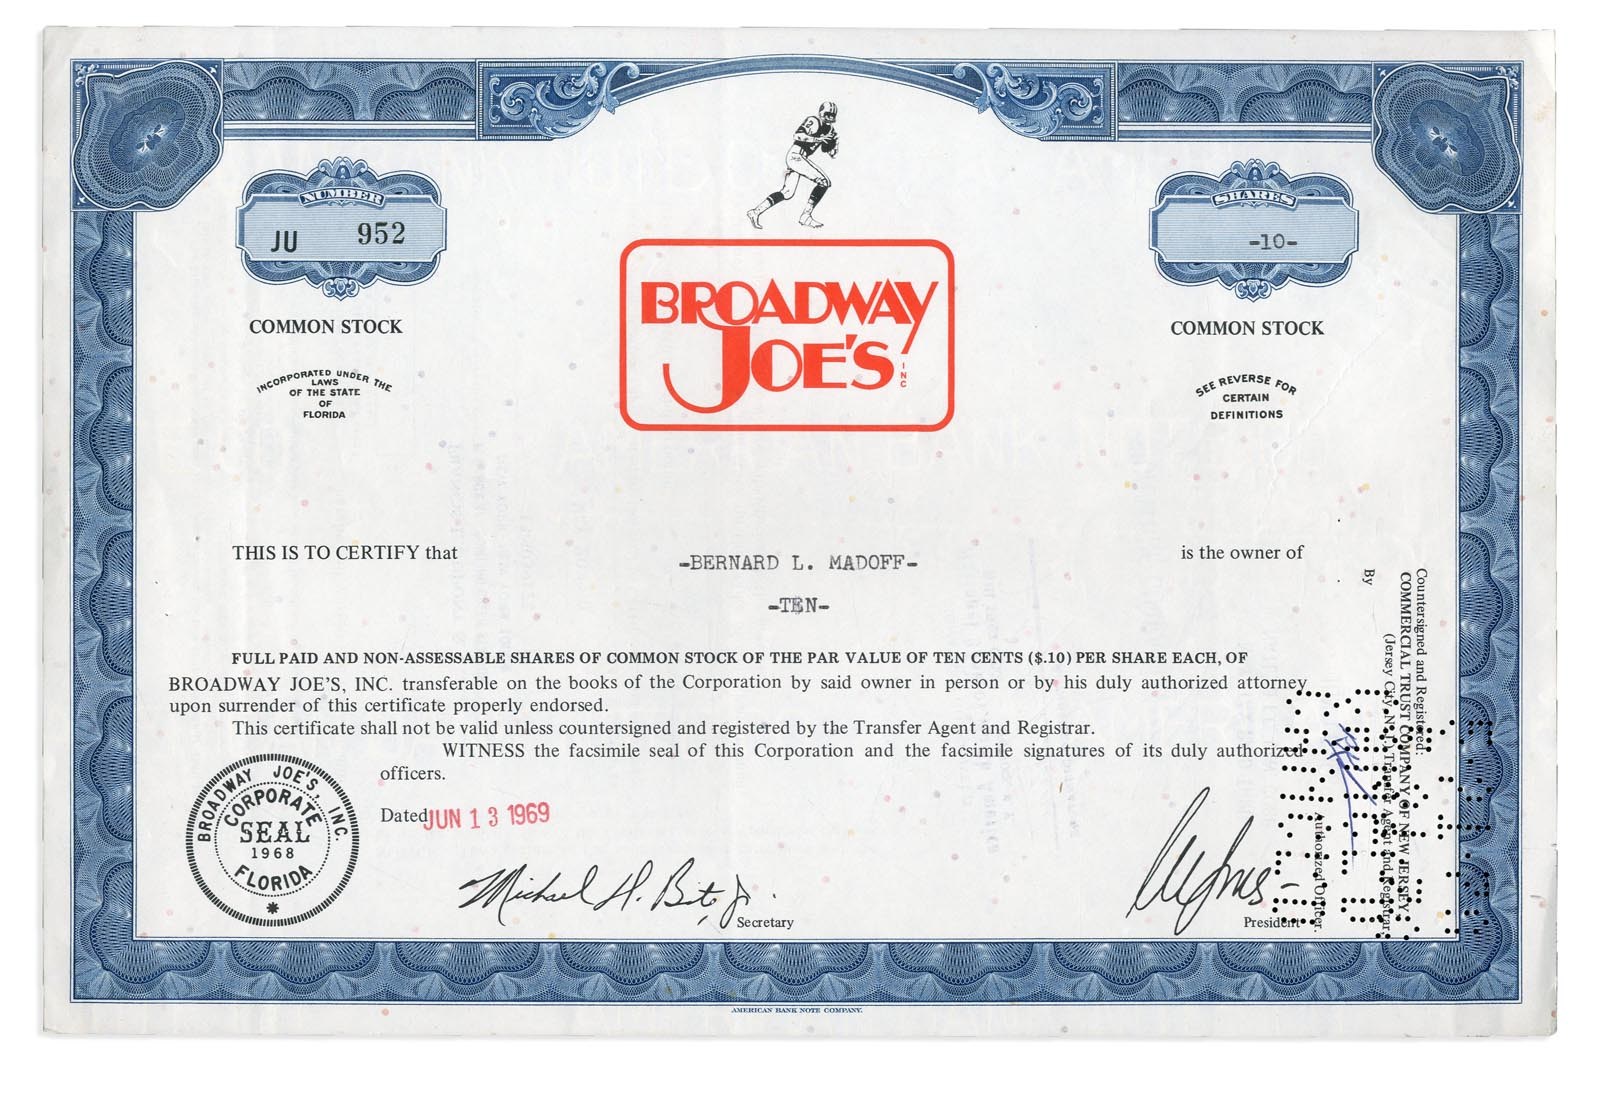 Best of the Best - Bernie Madoff Stock Certificate For Joe Namath's "Broadway Joe's"